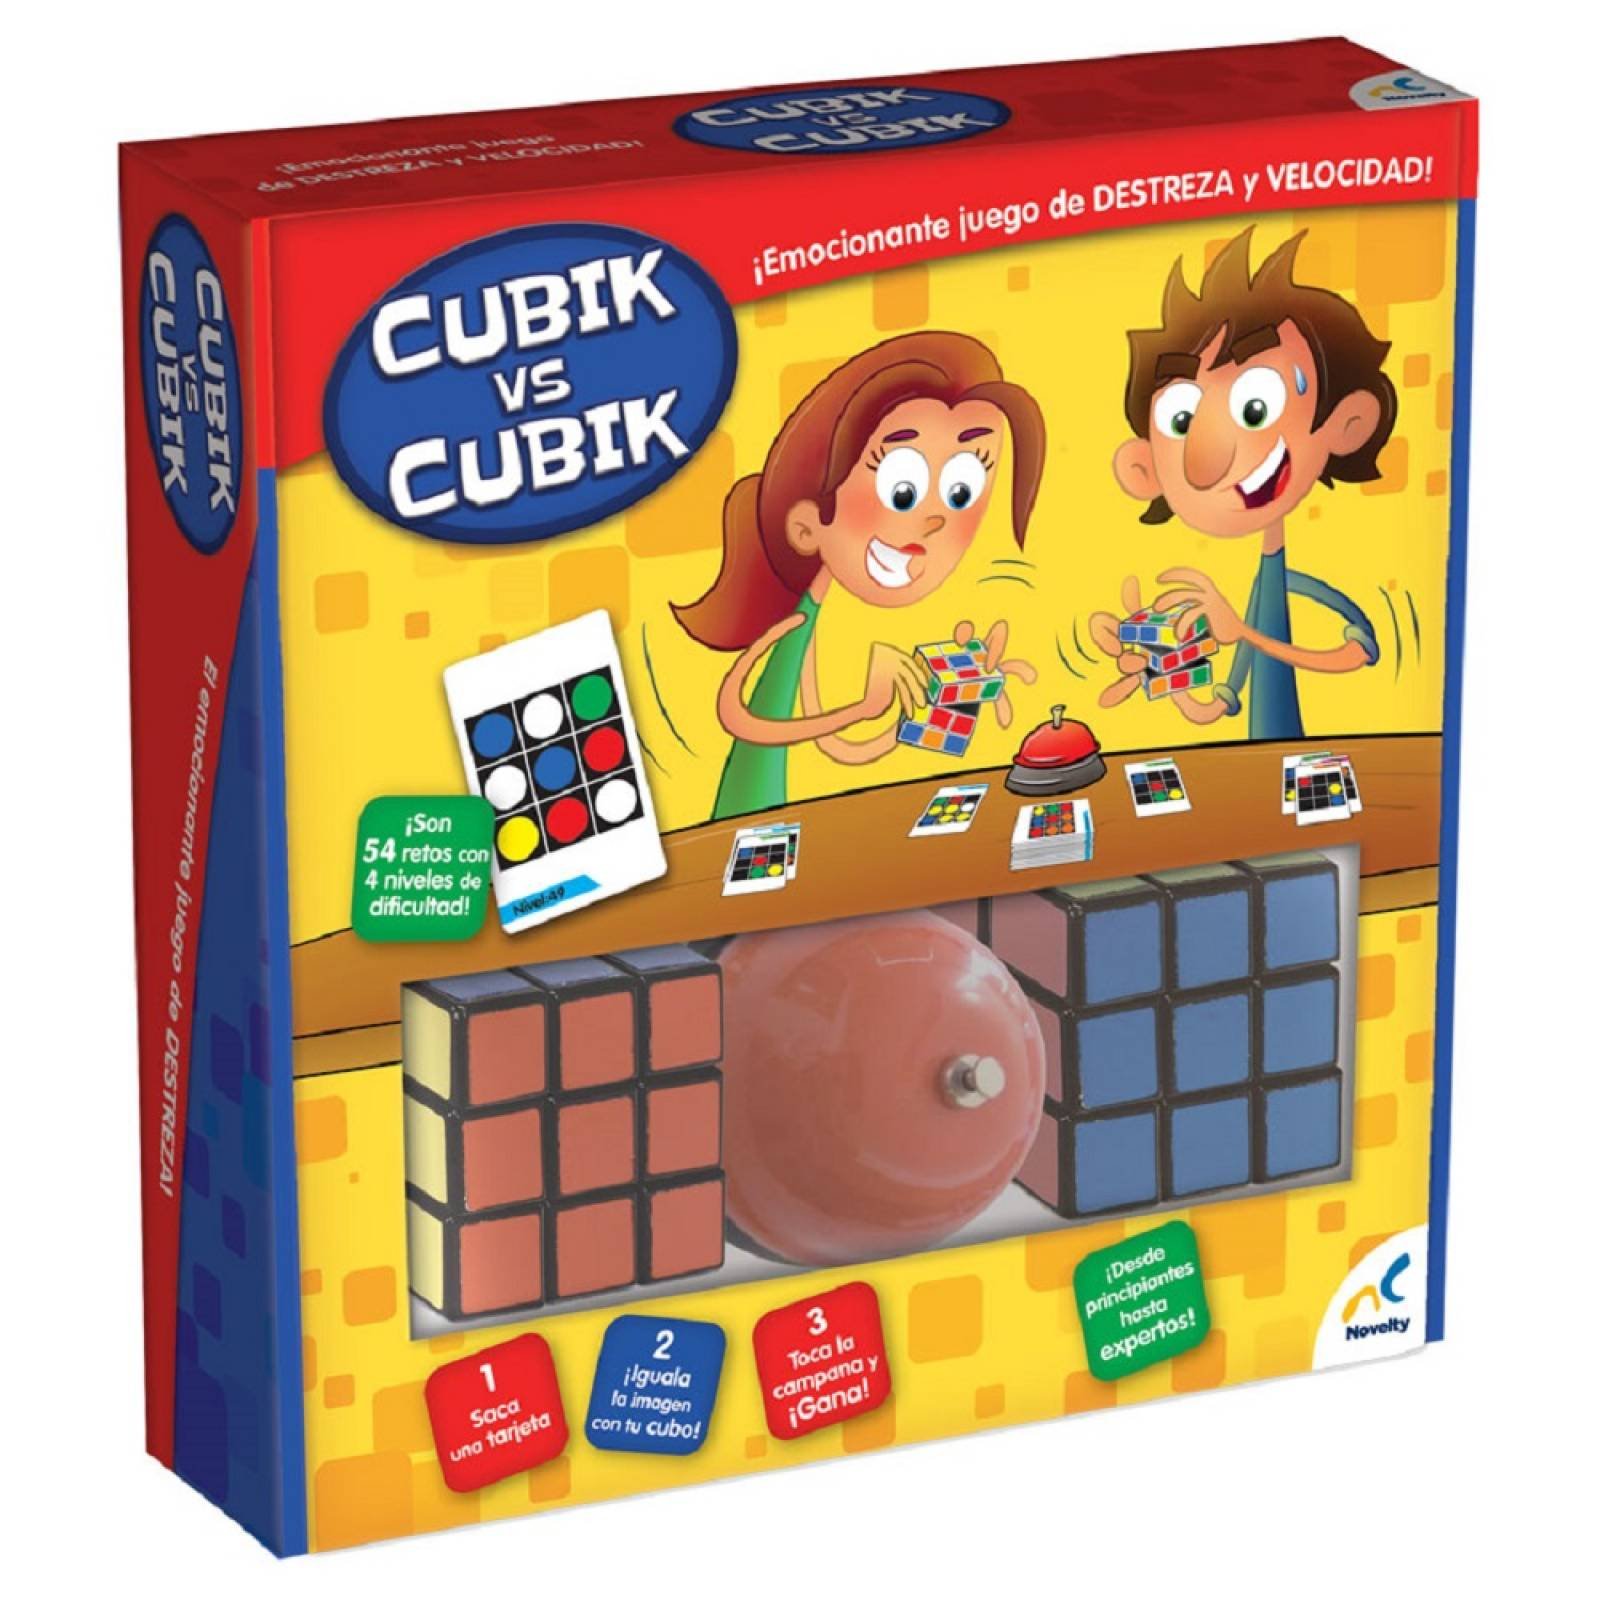 Novelty Cubik vs Cubik juego de destreza con 54 retos